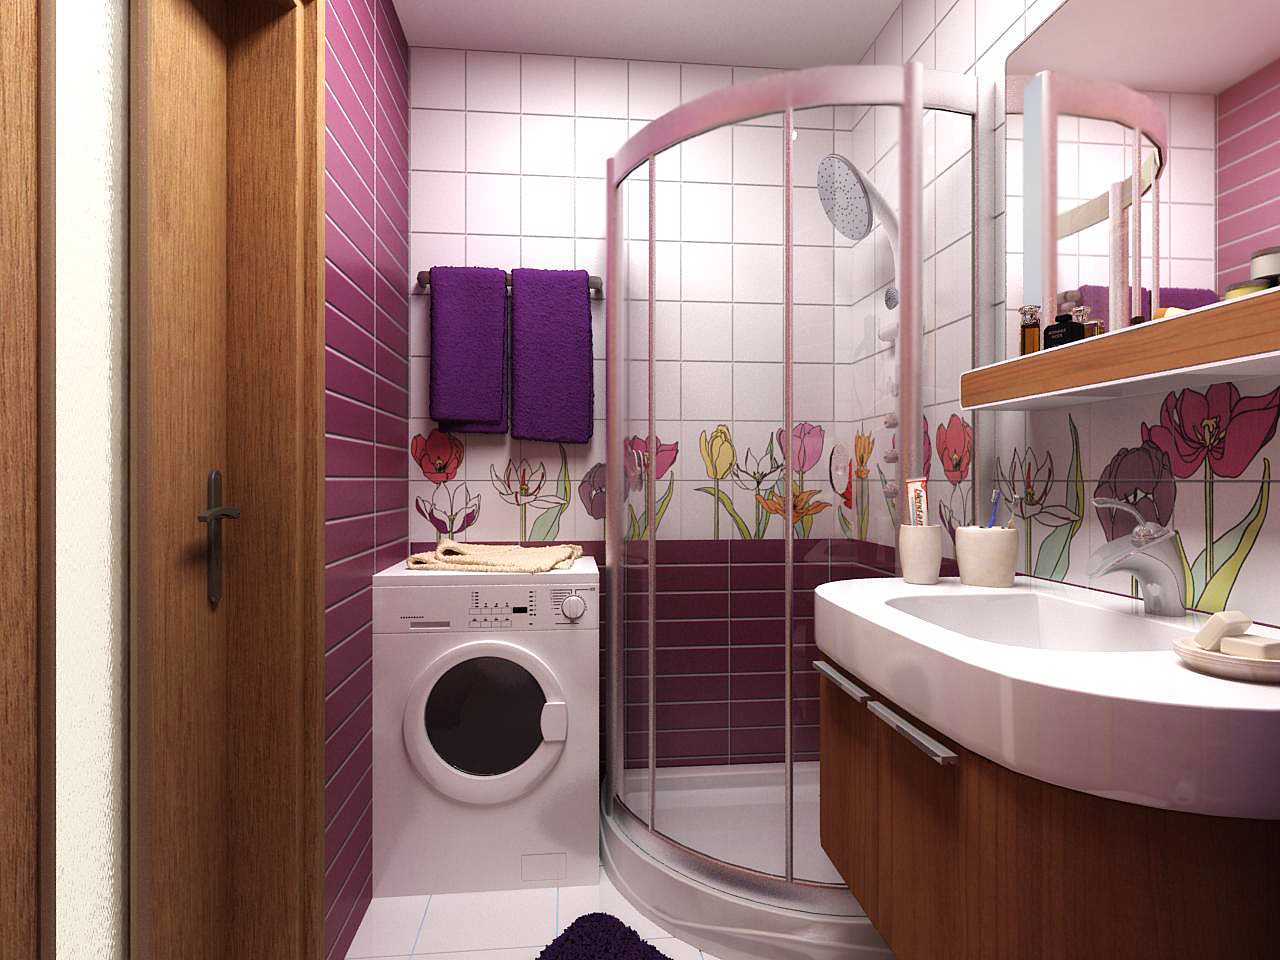 inačica modernog dizajna kupaonice 2,5 m²